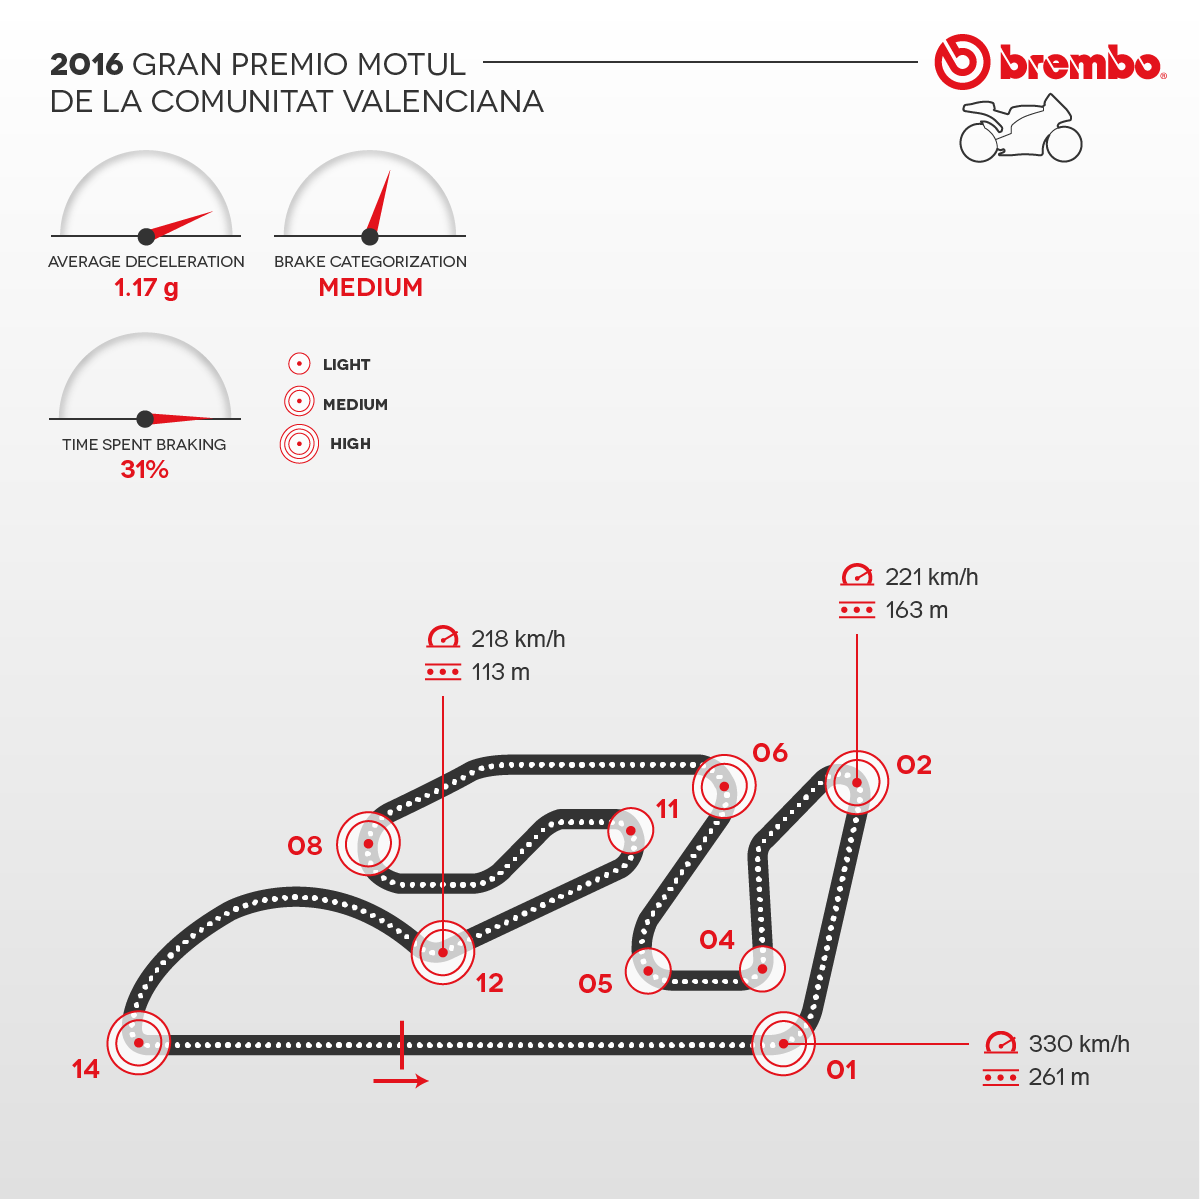 Representación detallada del circuito de la Comunitat Valenciana 2016 con curvas detalles Brembo